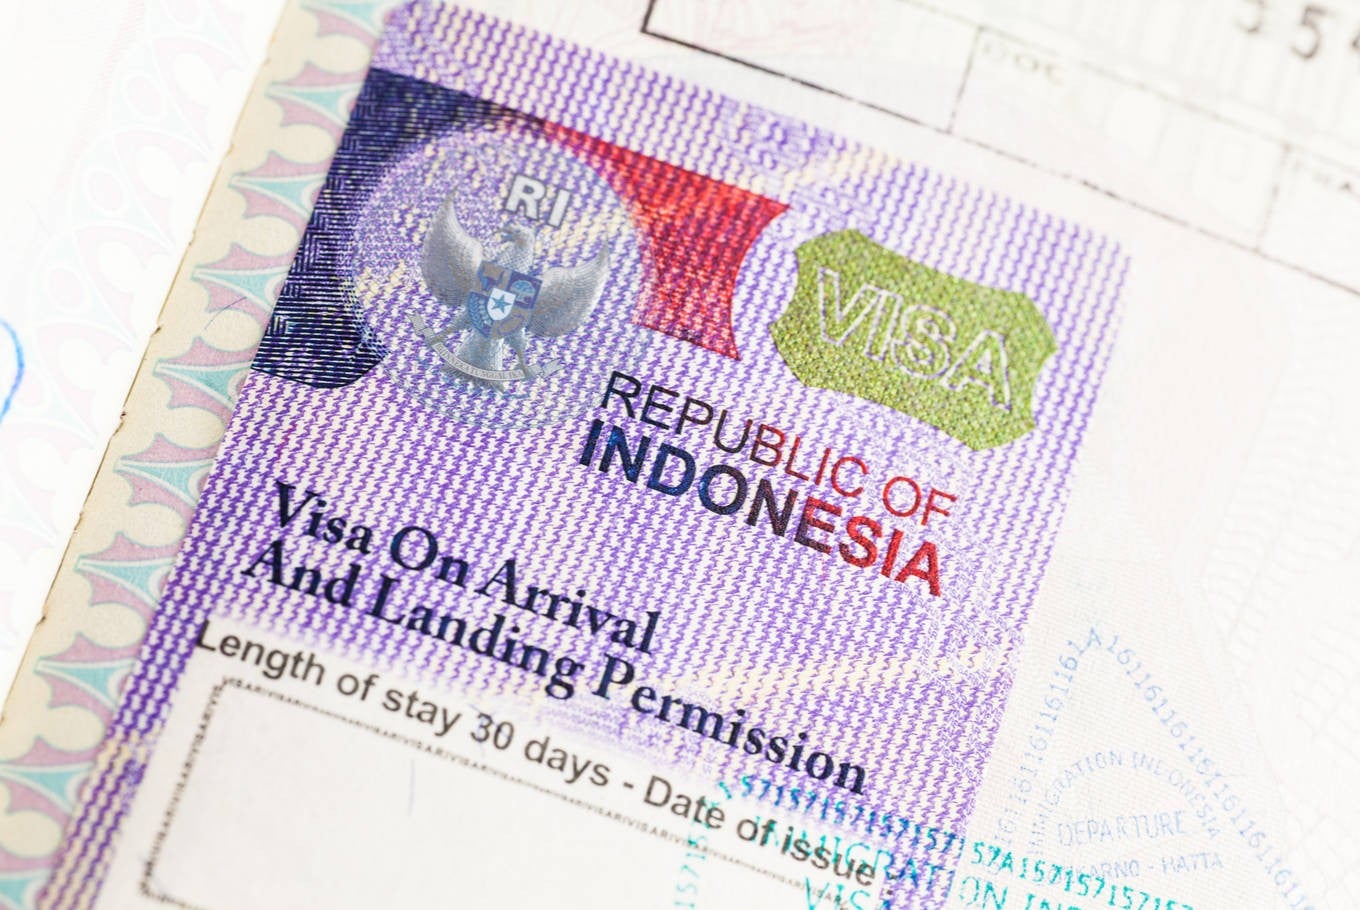 visit indonesia uk passport